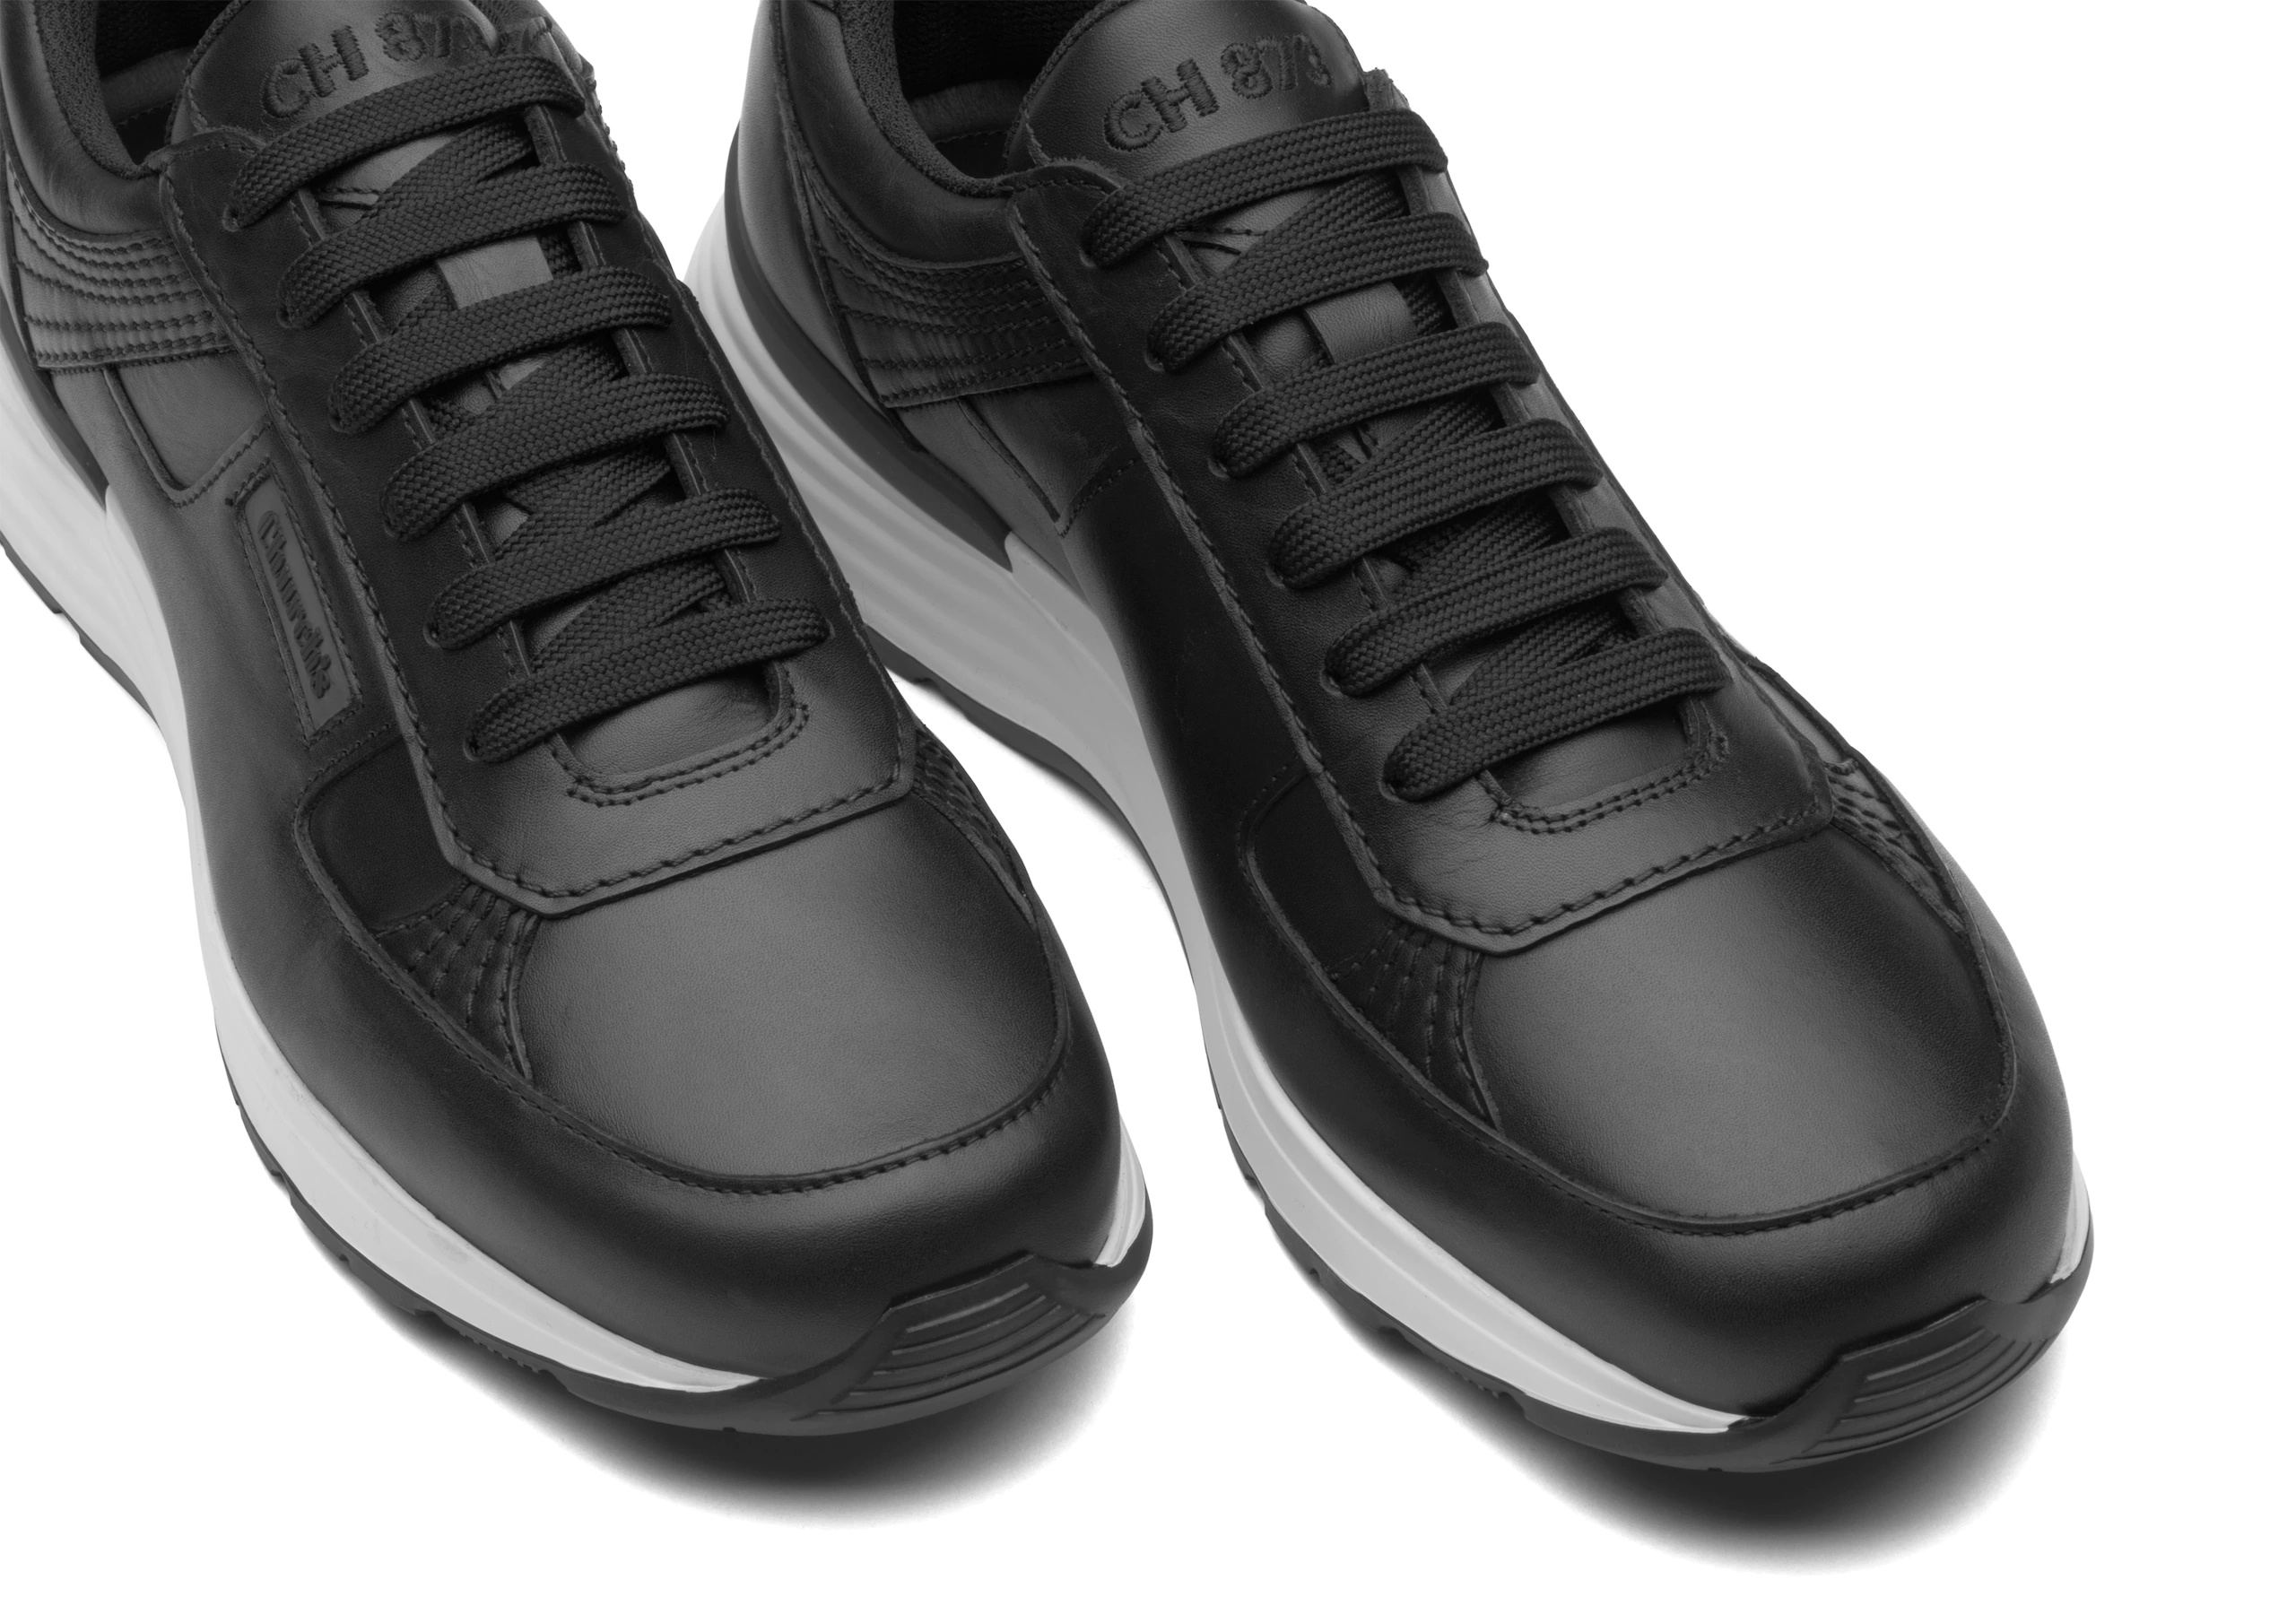 Ch873
Plume Calf Leather Retro Sneaker Black - 4